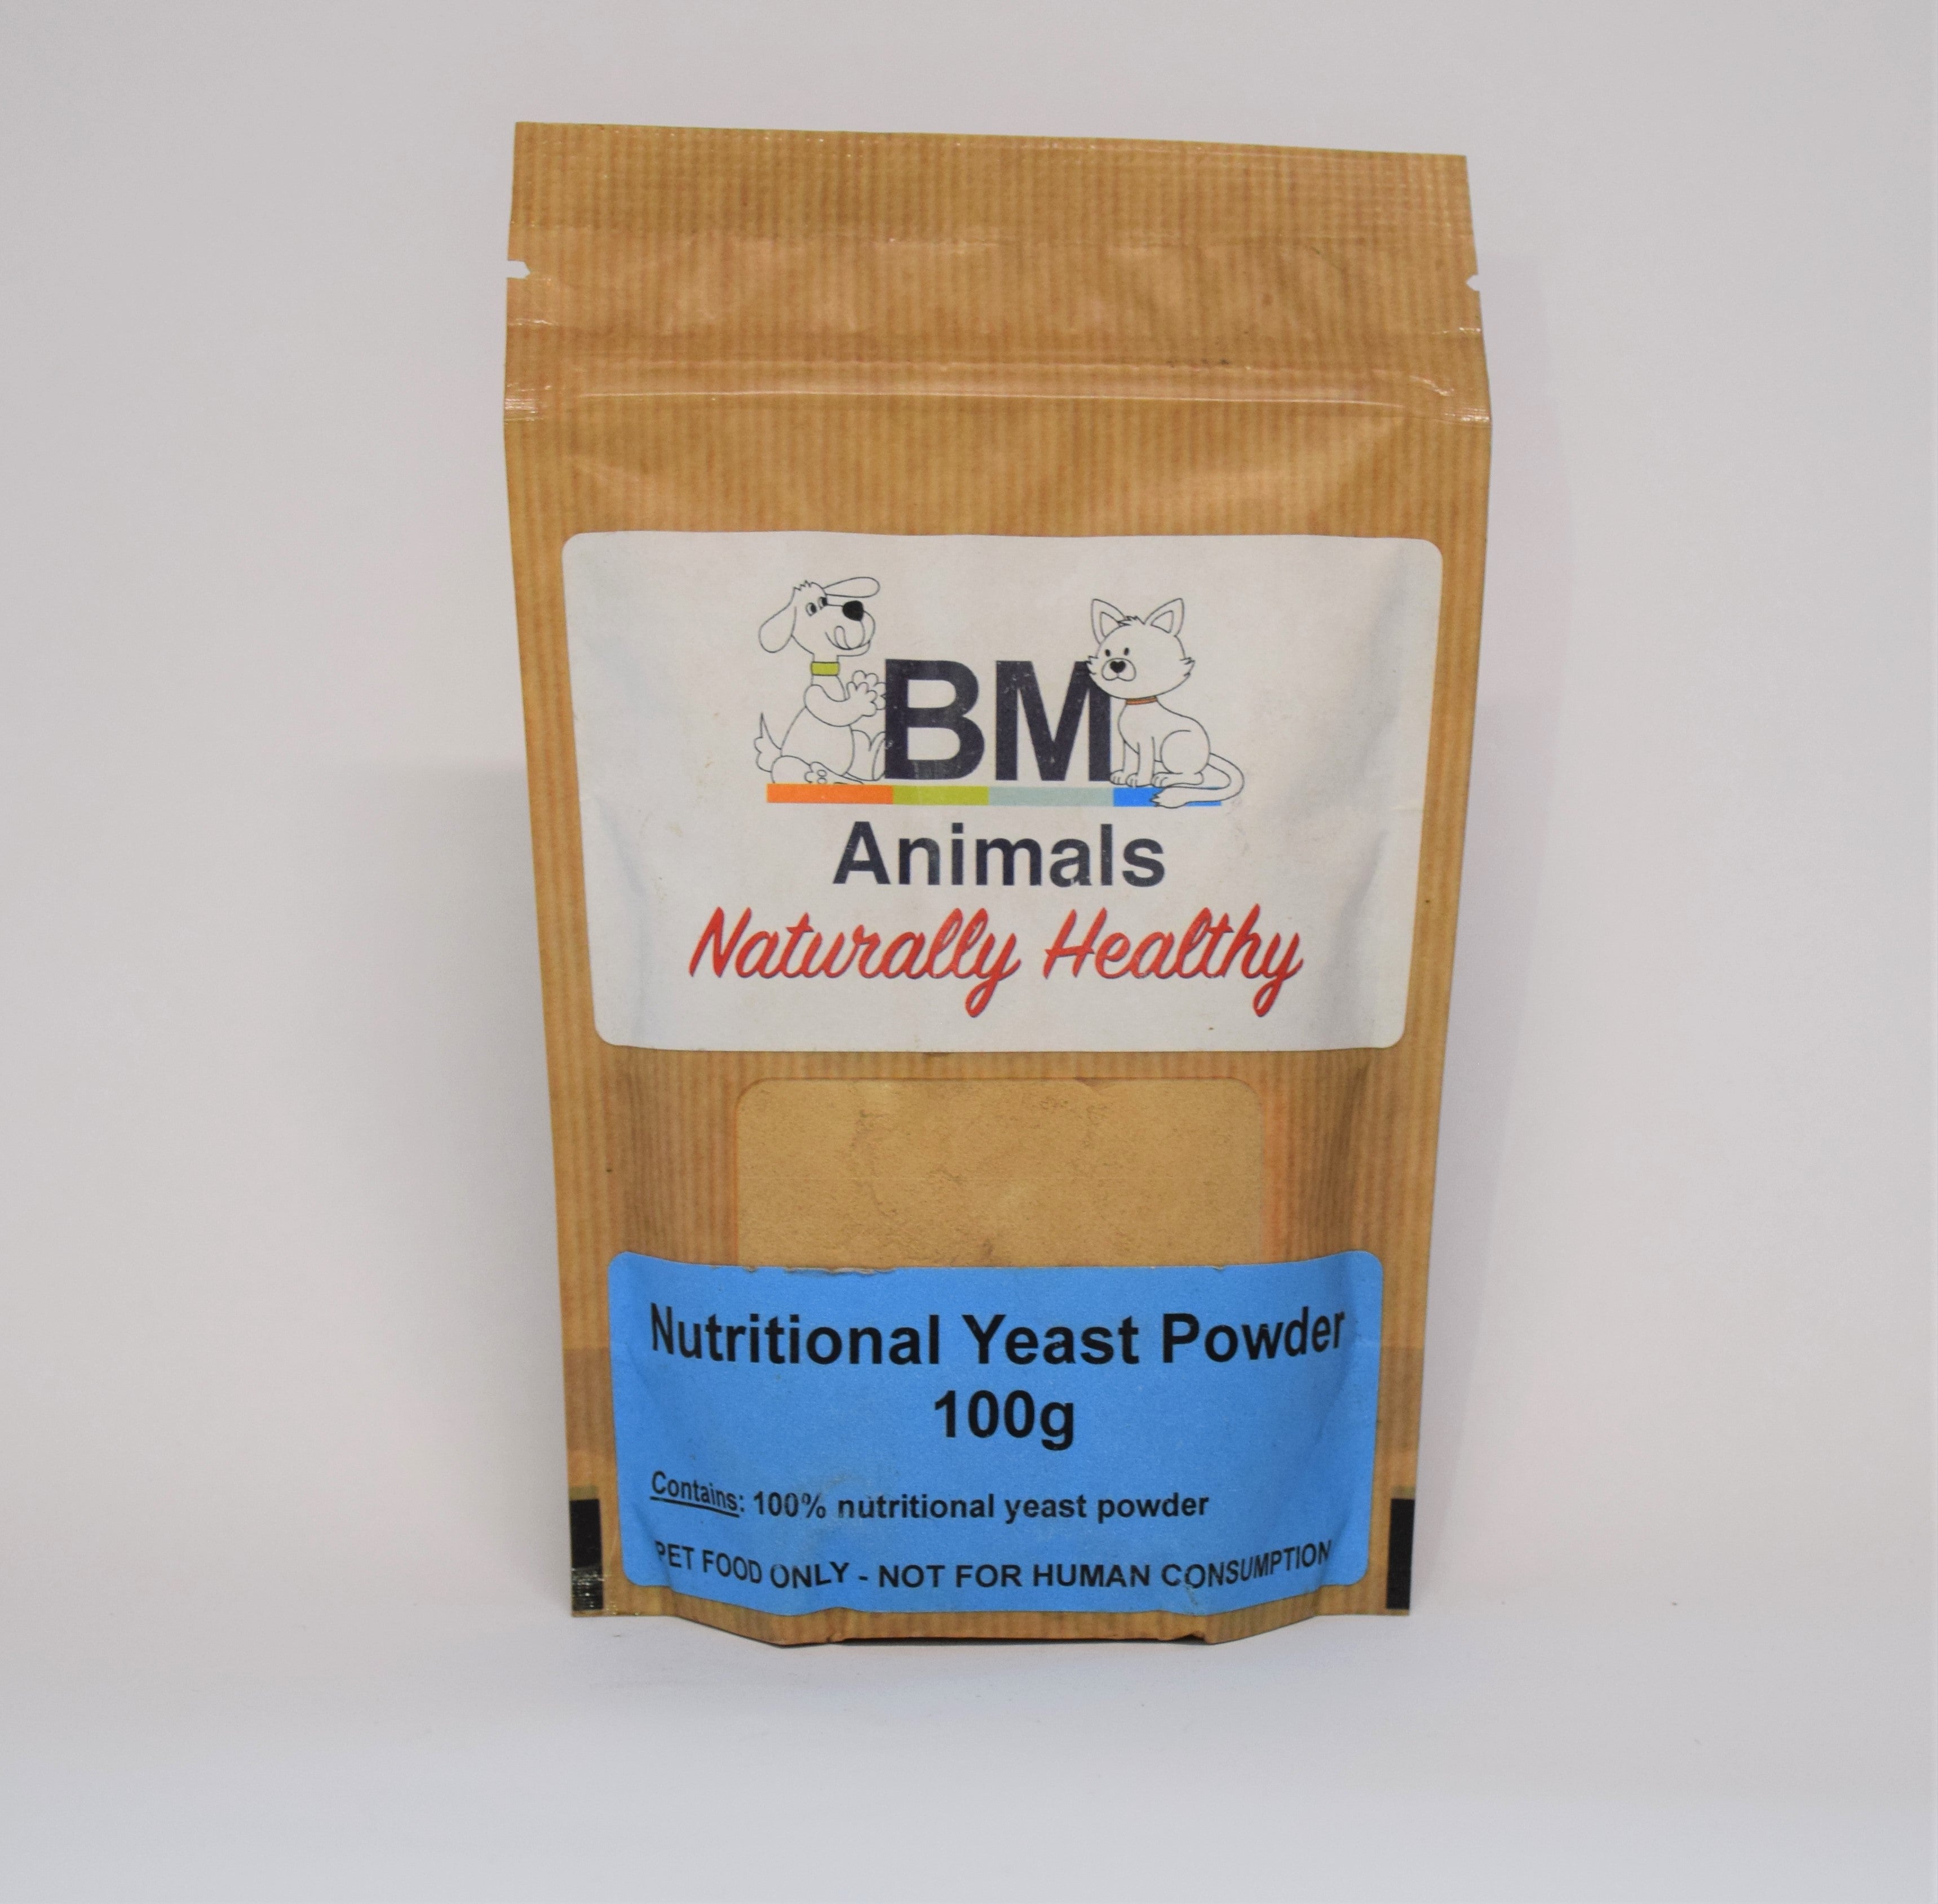 Bm Nutritional Yeast Powder 100g